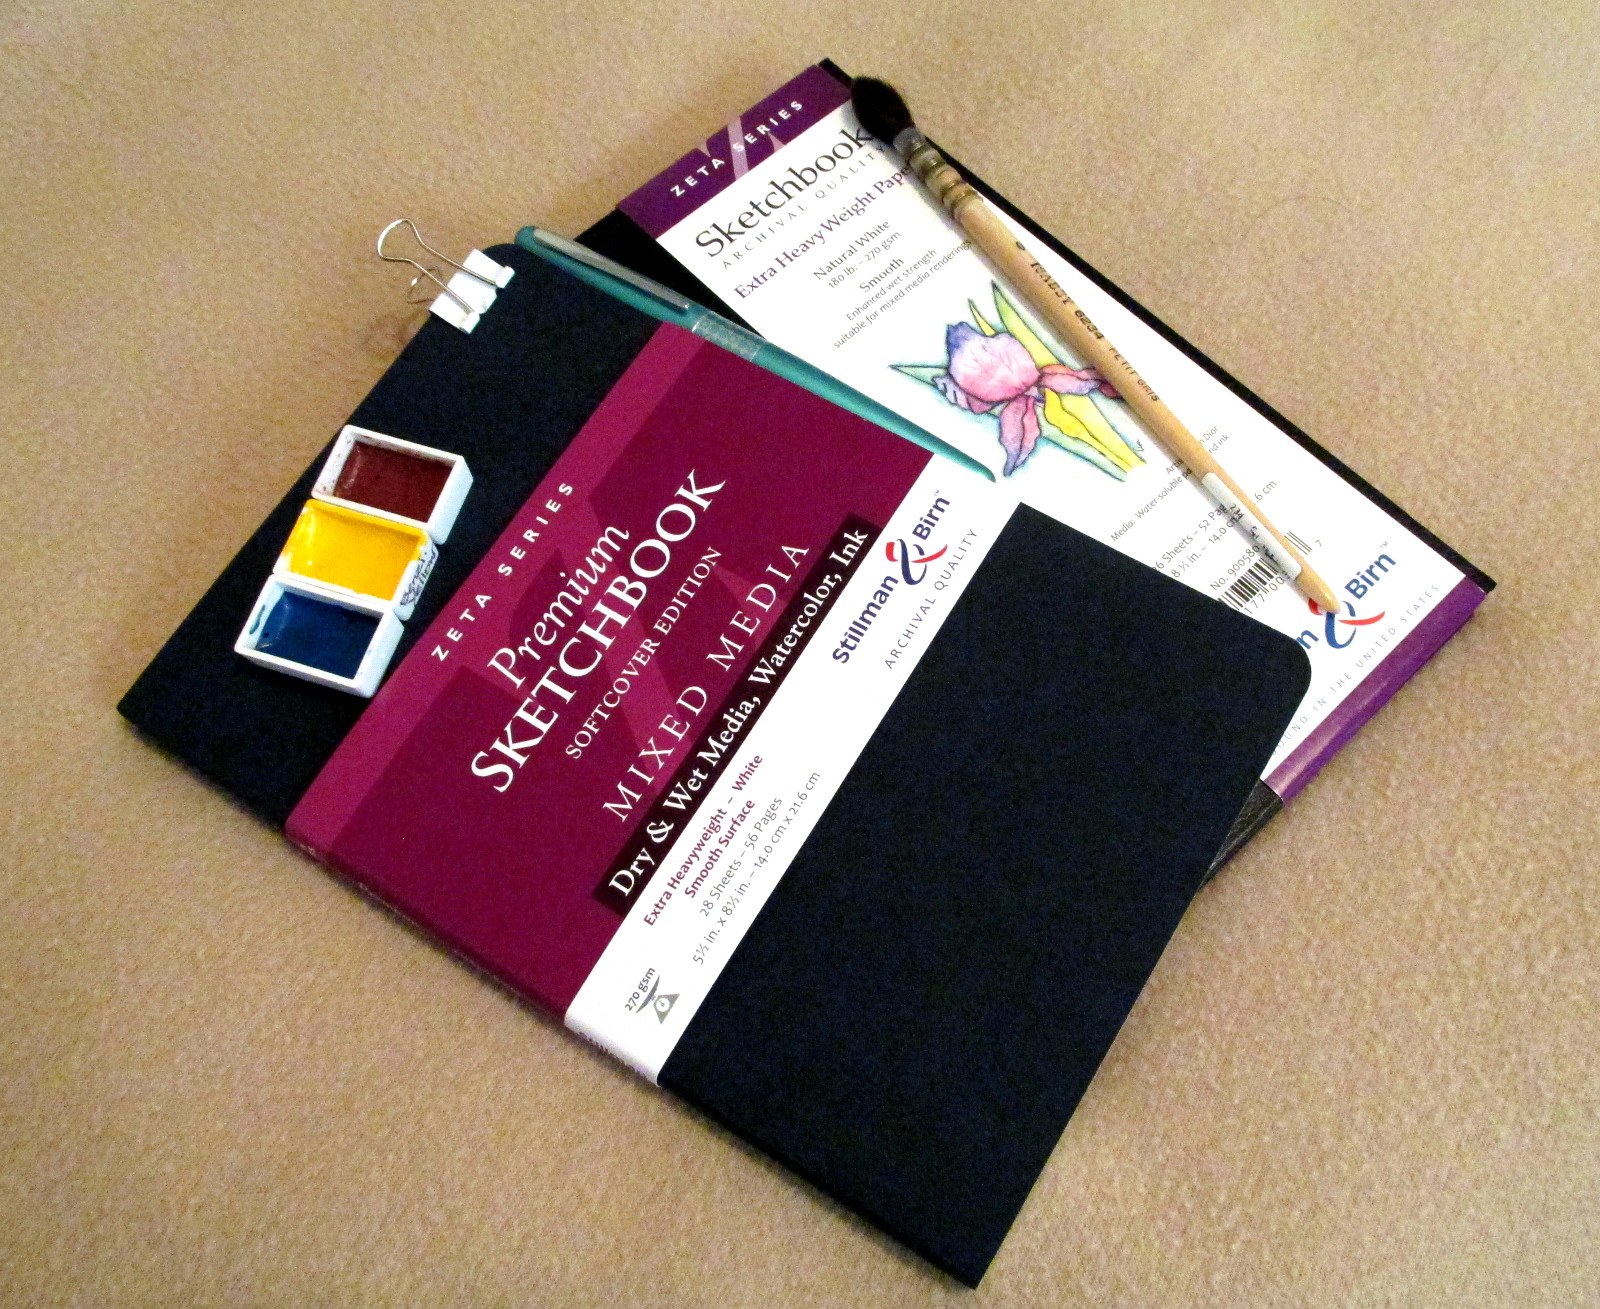 Stillman & Birn 5.5 x 8.5 Beta Series Hardbound Sketchbook